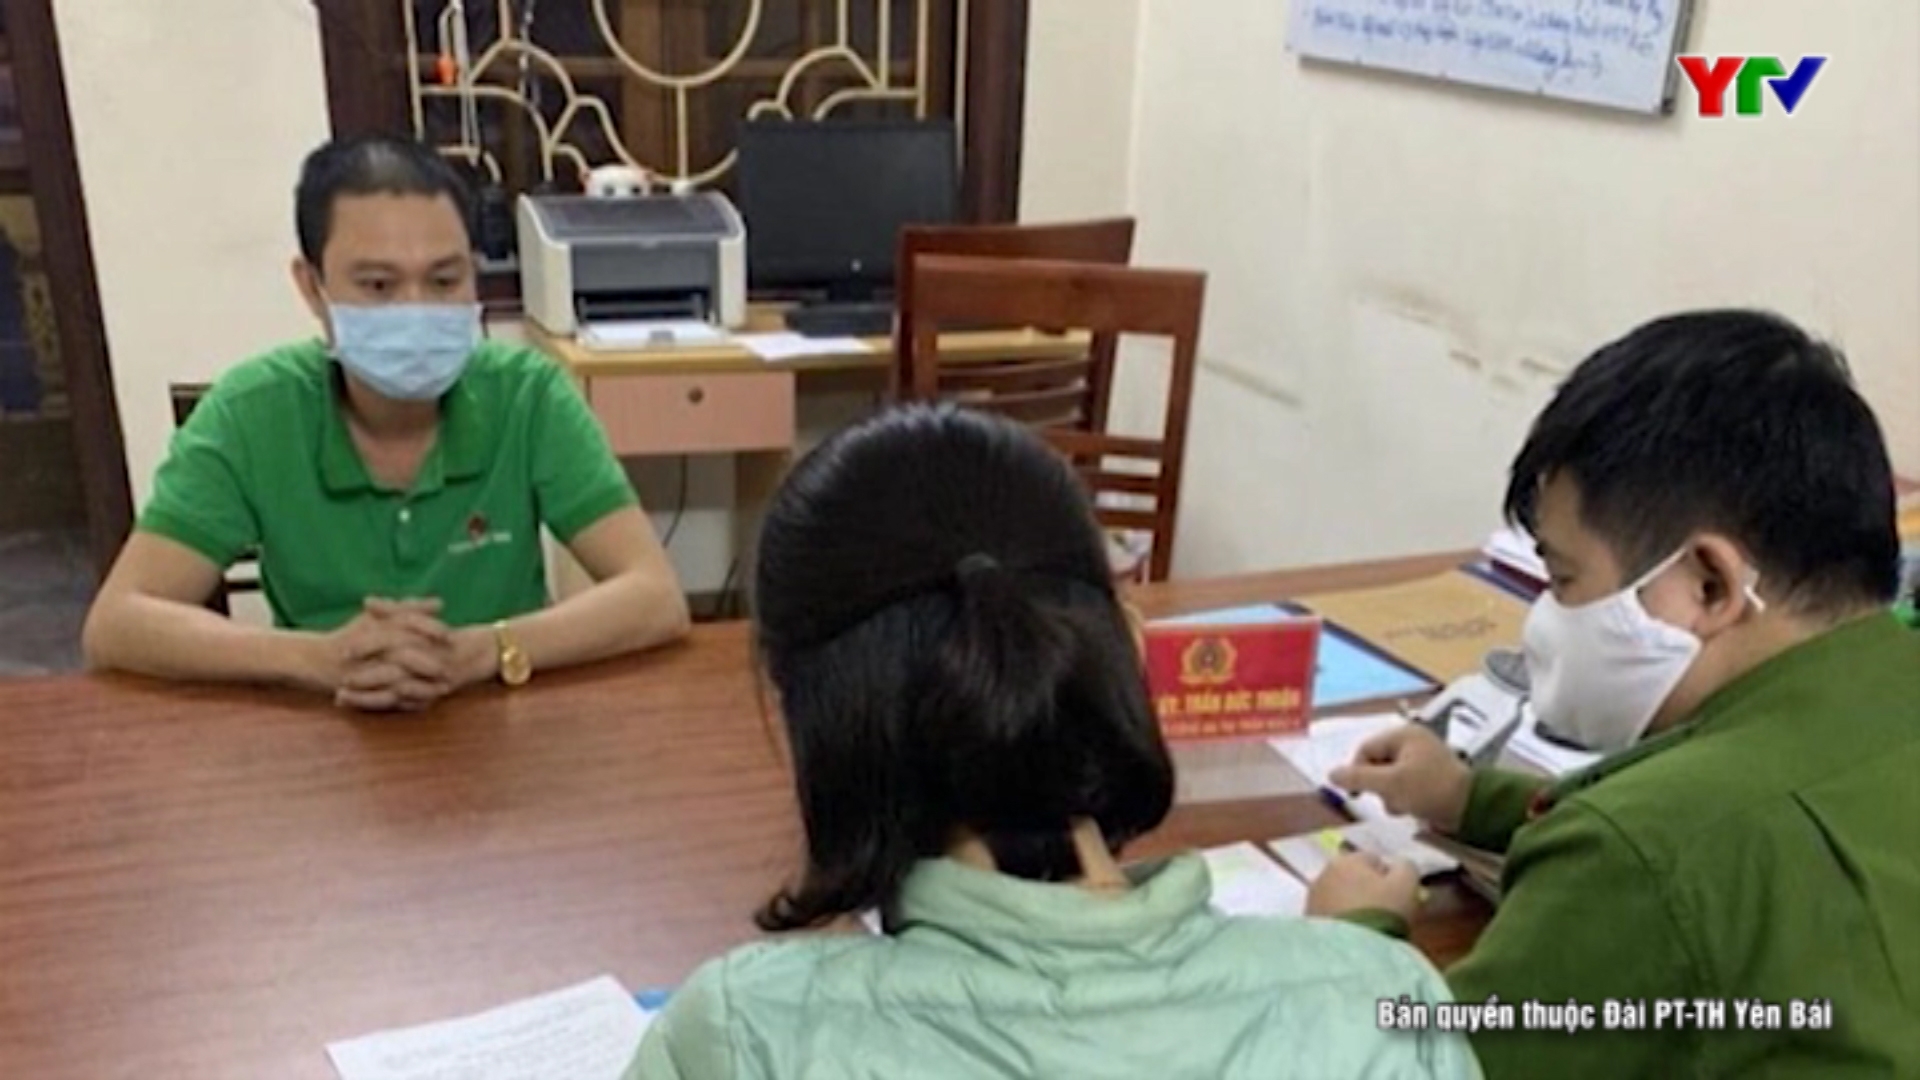 Chủ cửa hàng điện tử ở thị trấn Mậu A, huyện Văn Yên bị xử phạt vì không tạm dừng hoạt động kinh doanh